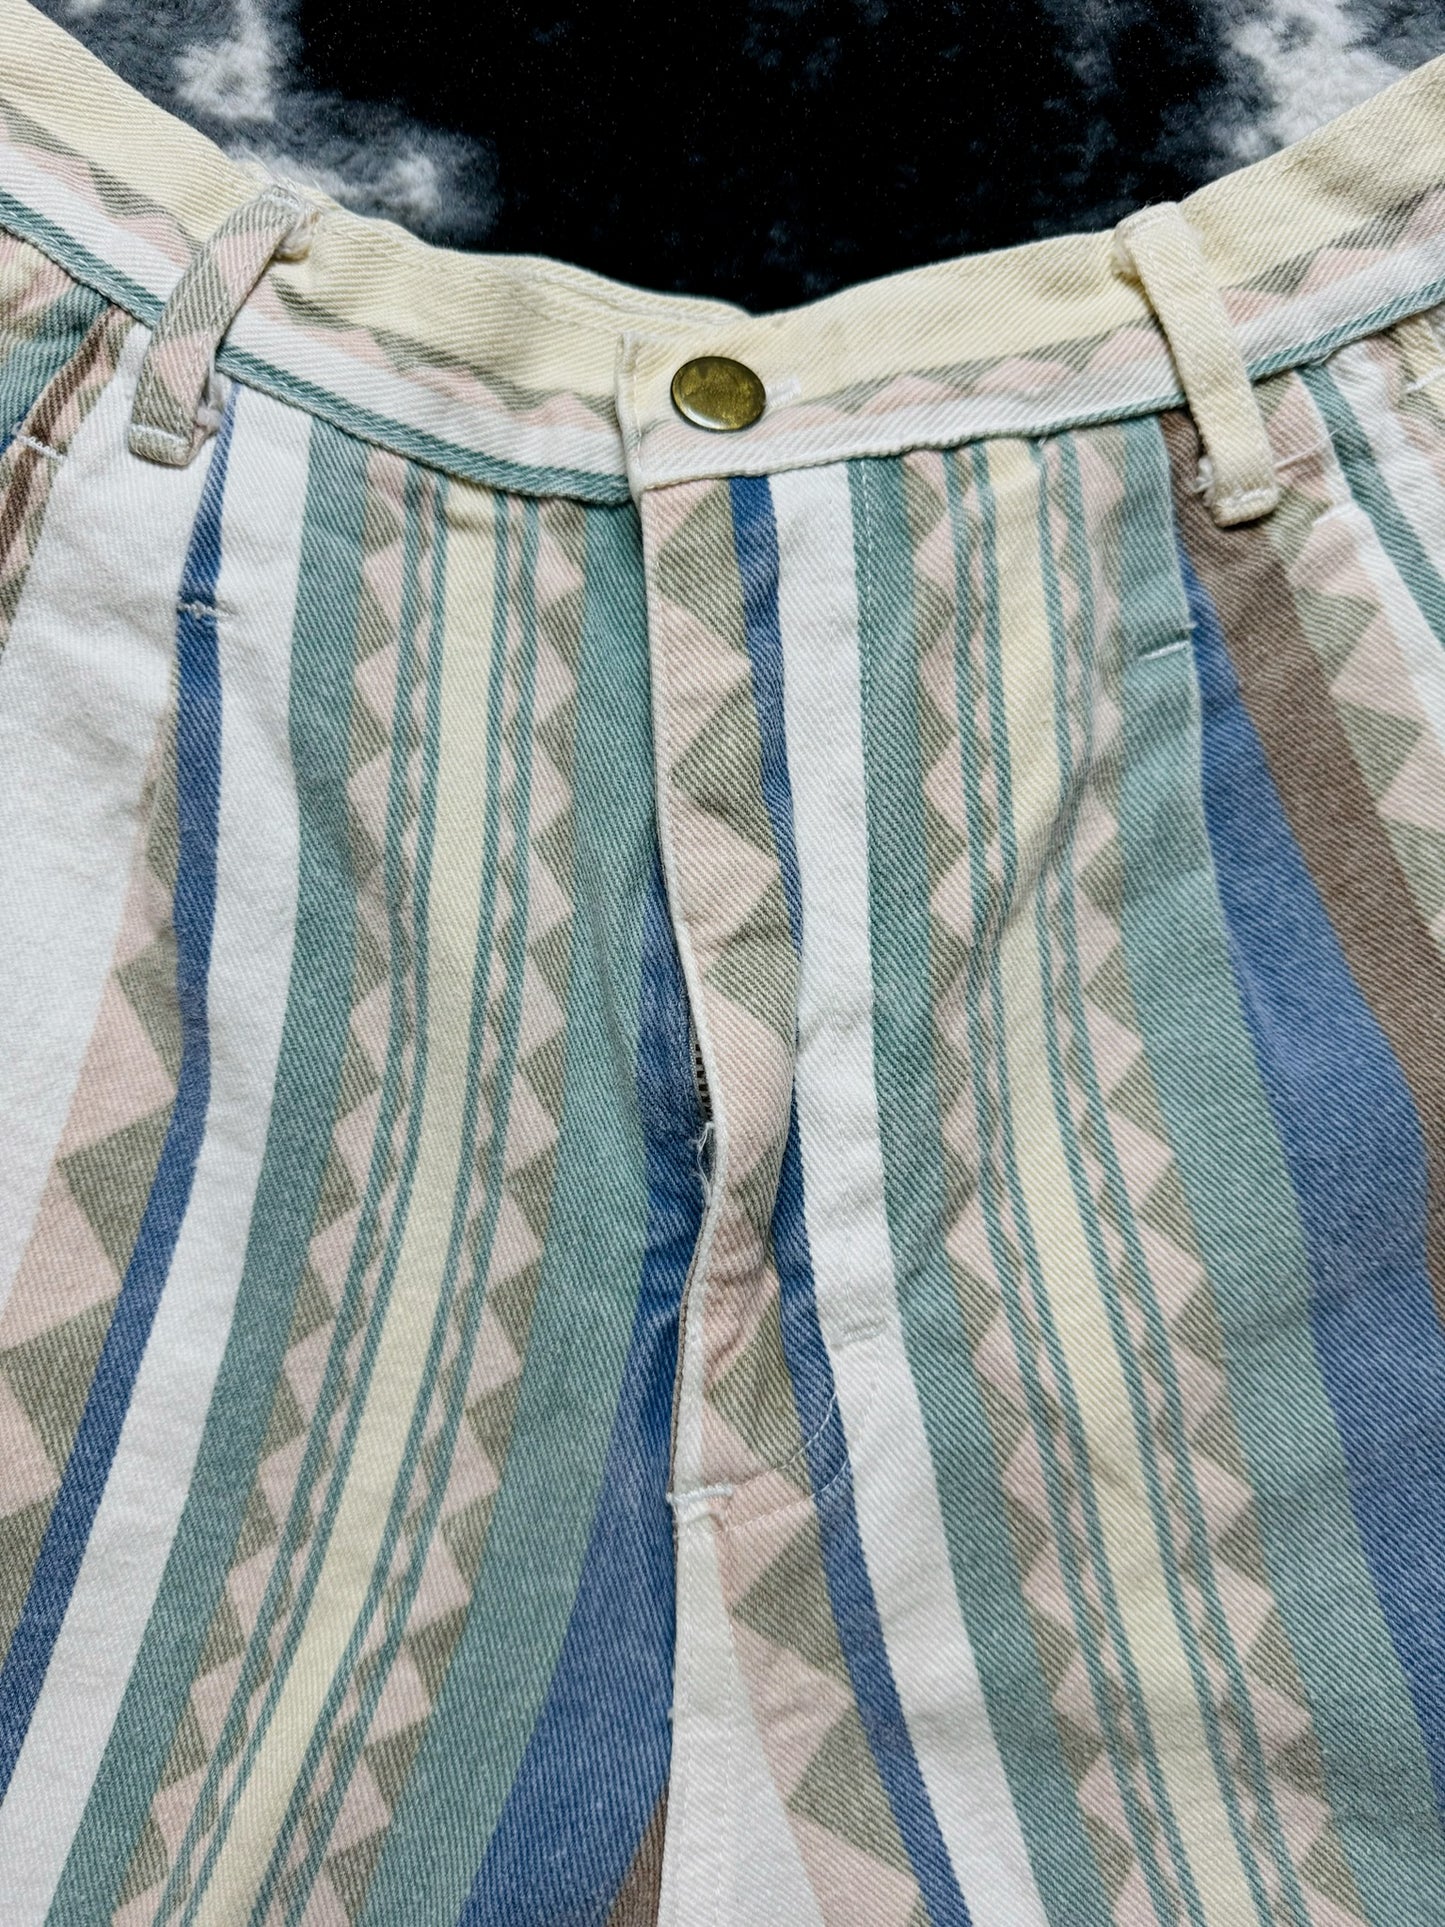 Stampede Vintage Shorts (28”)